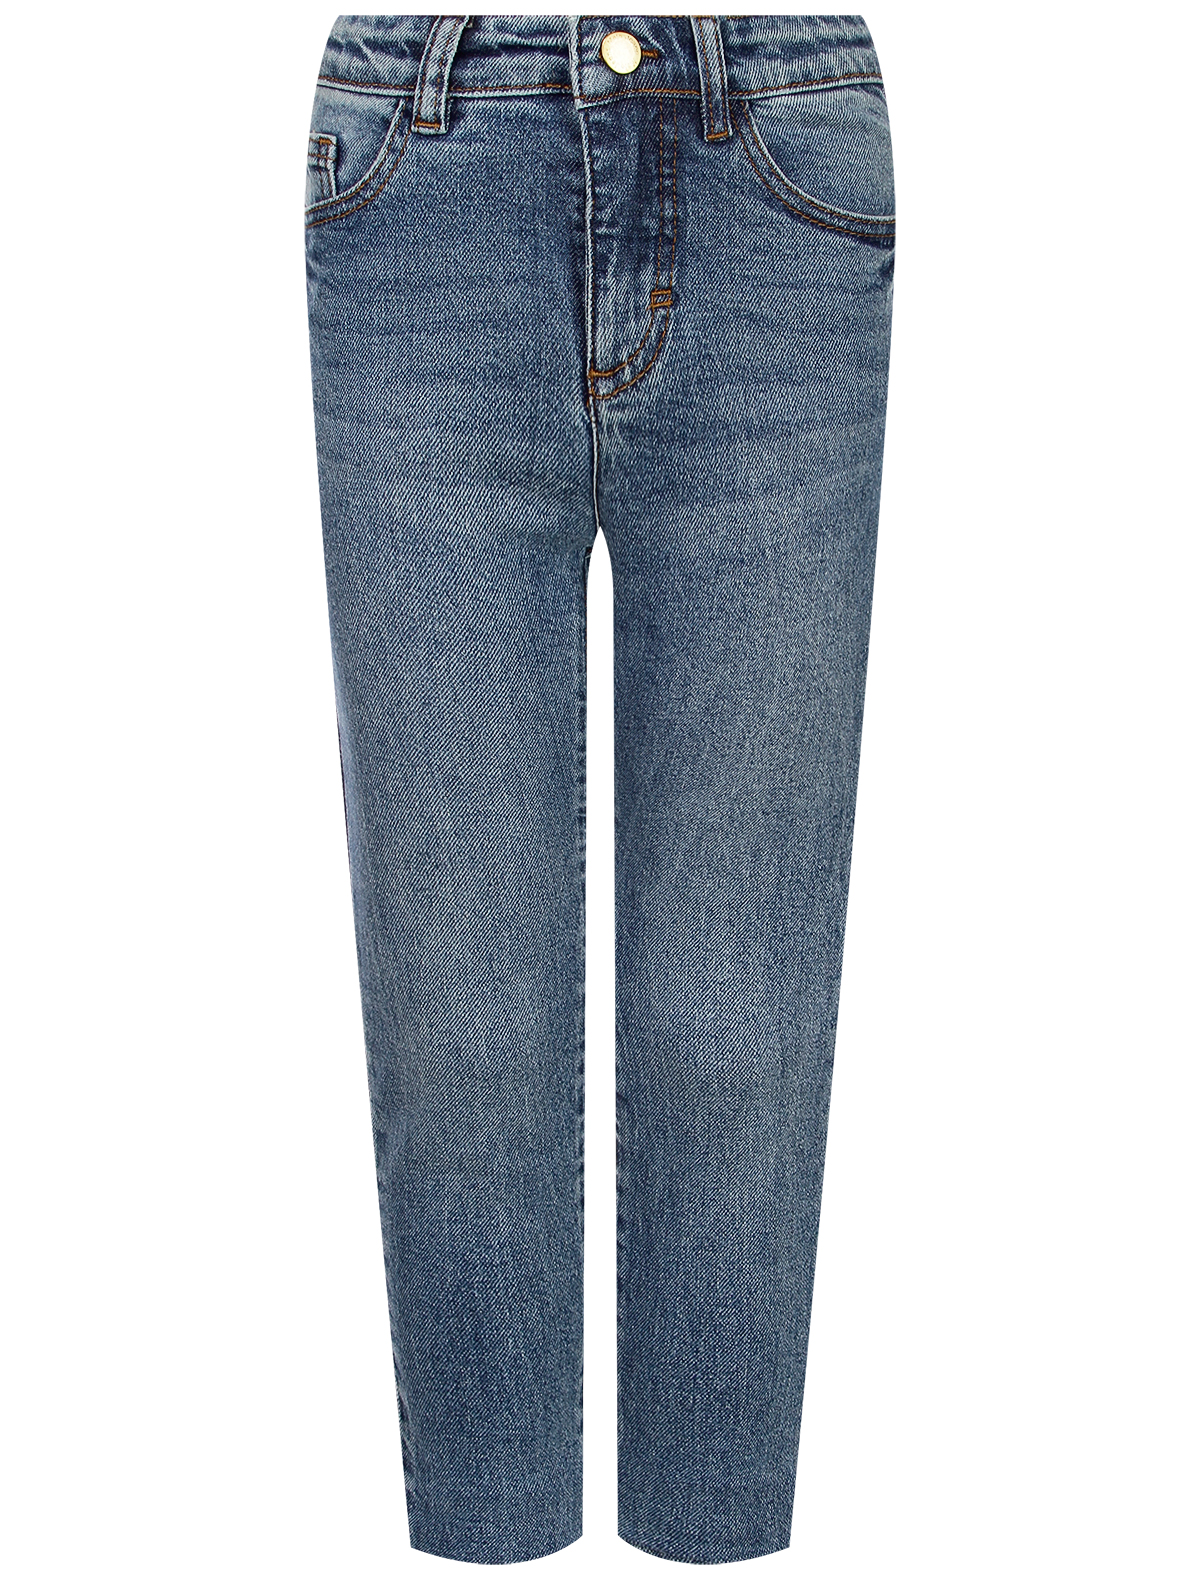 джинсы molo для девочки, синие